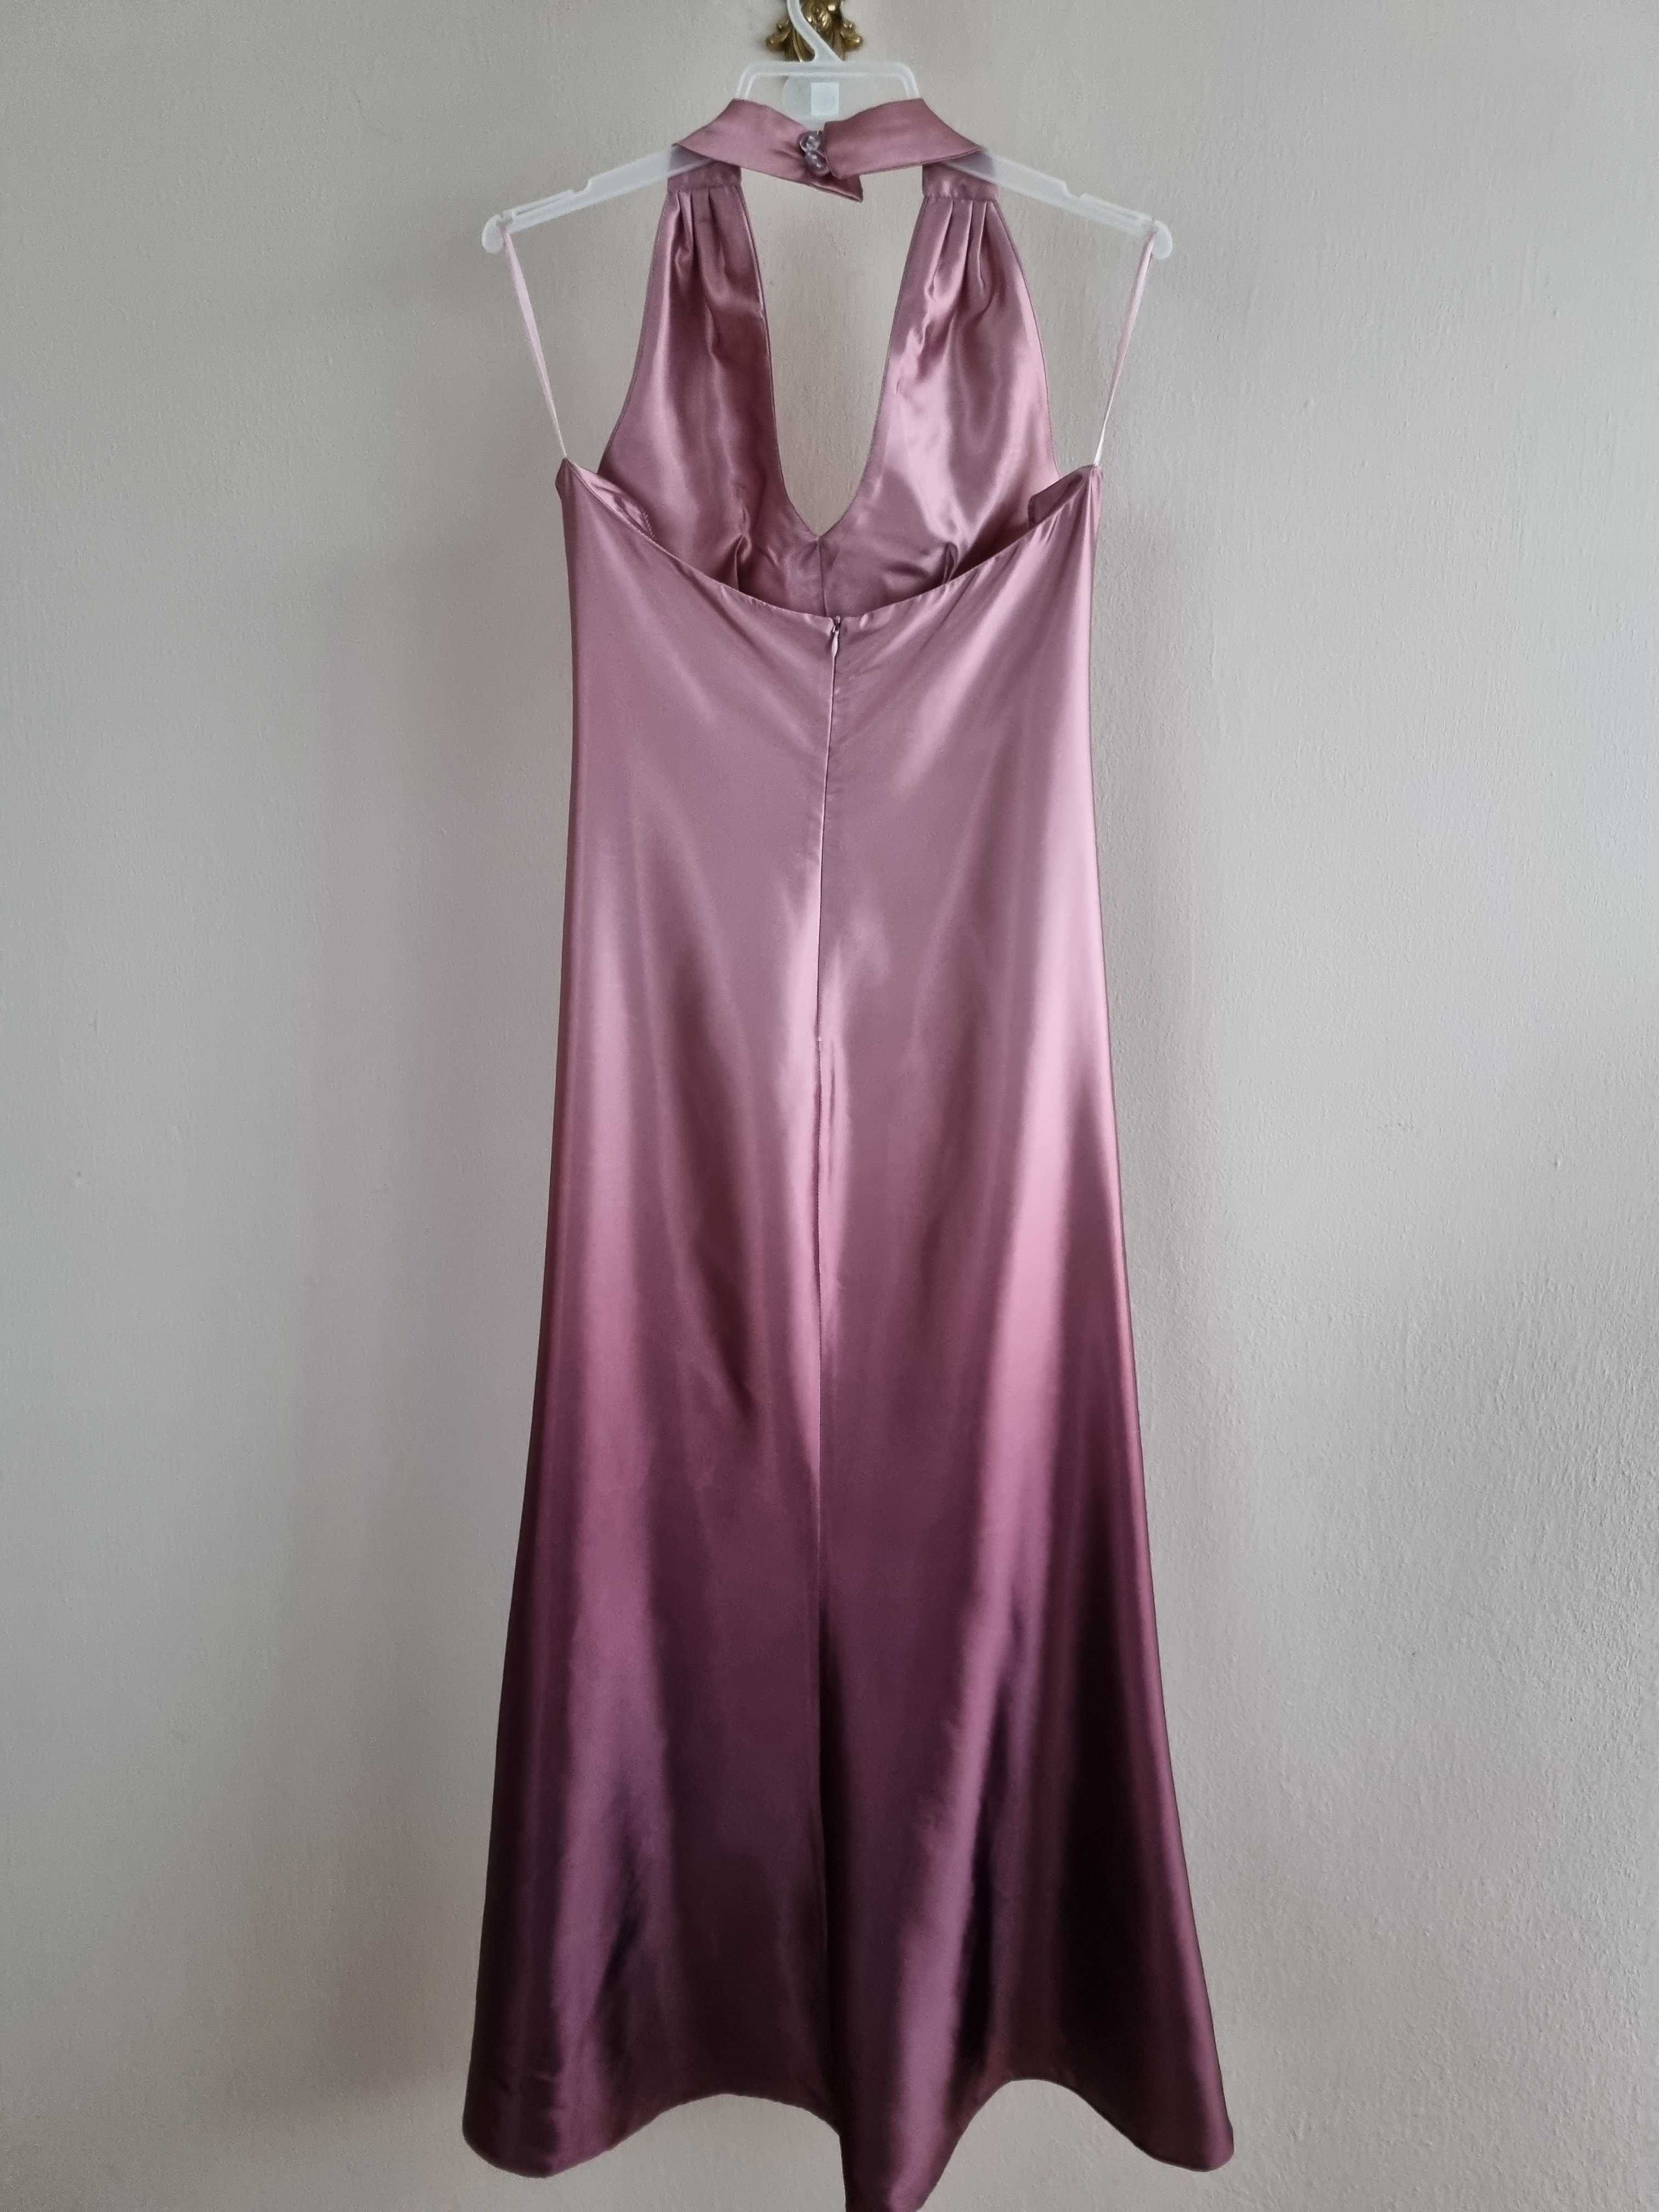 Dluga sukienka wieczorowa ombre, różowa, rozmiar 40, idealna na wesele